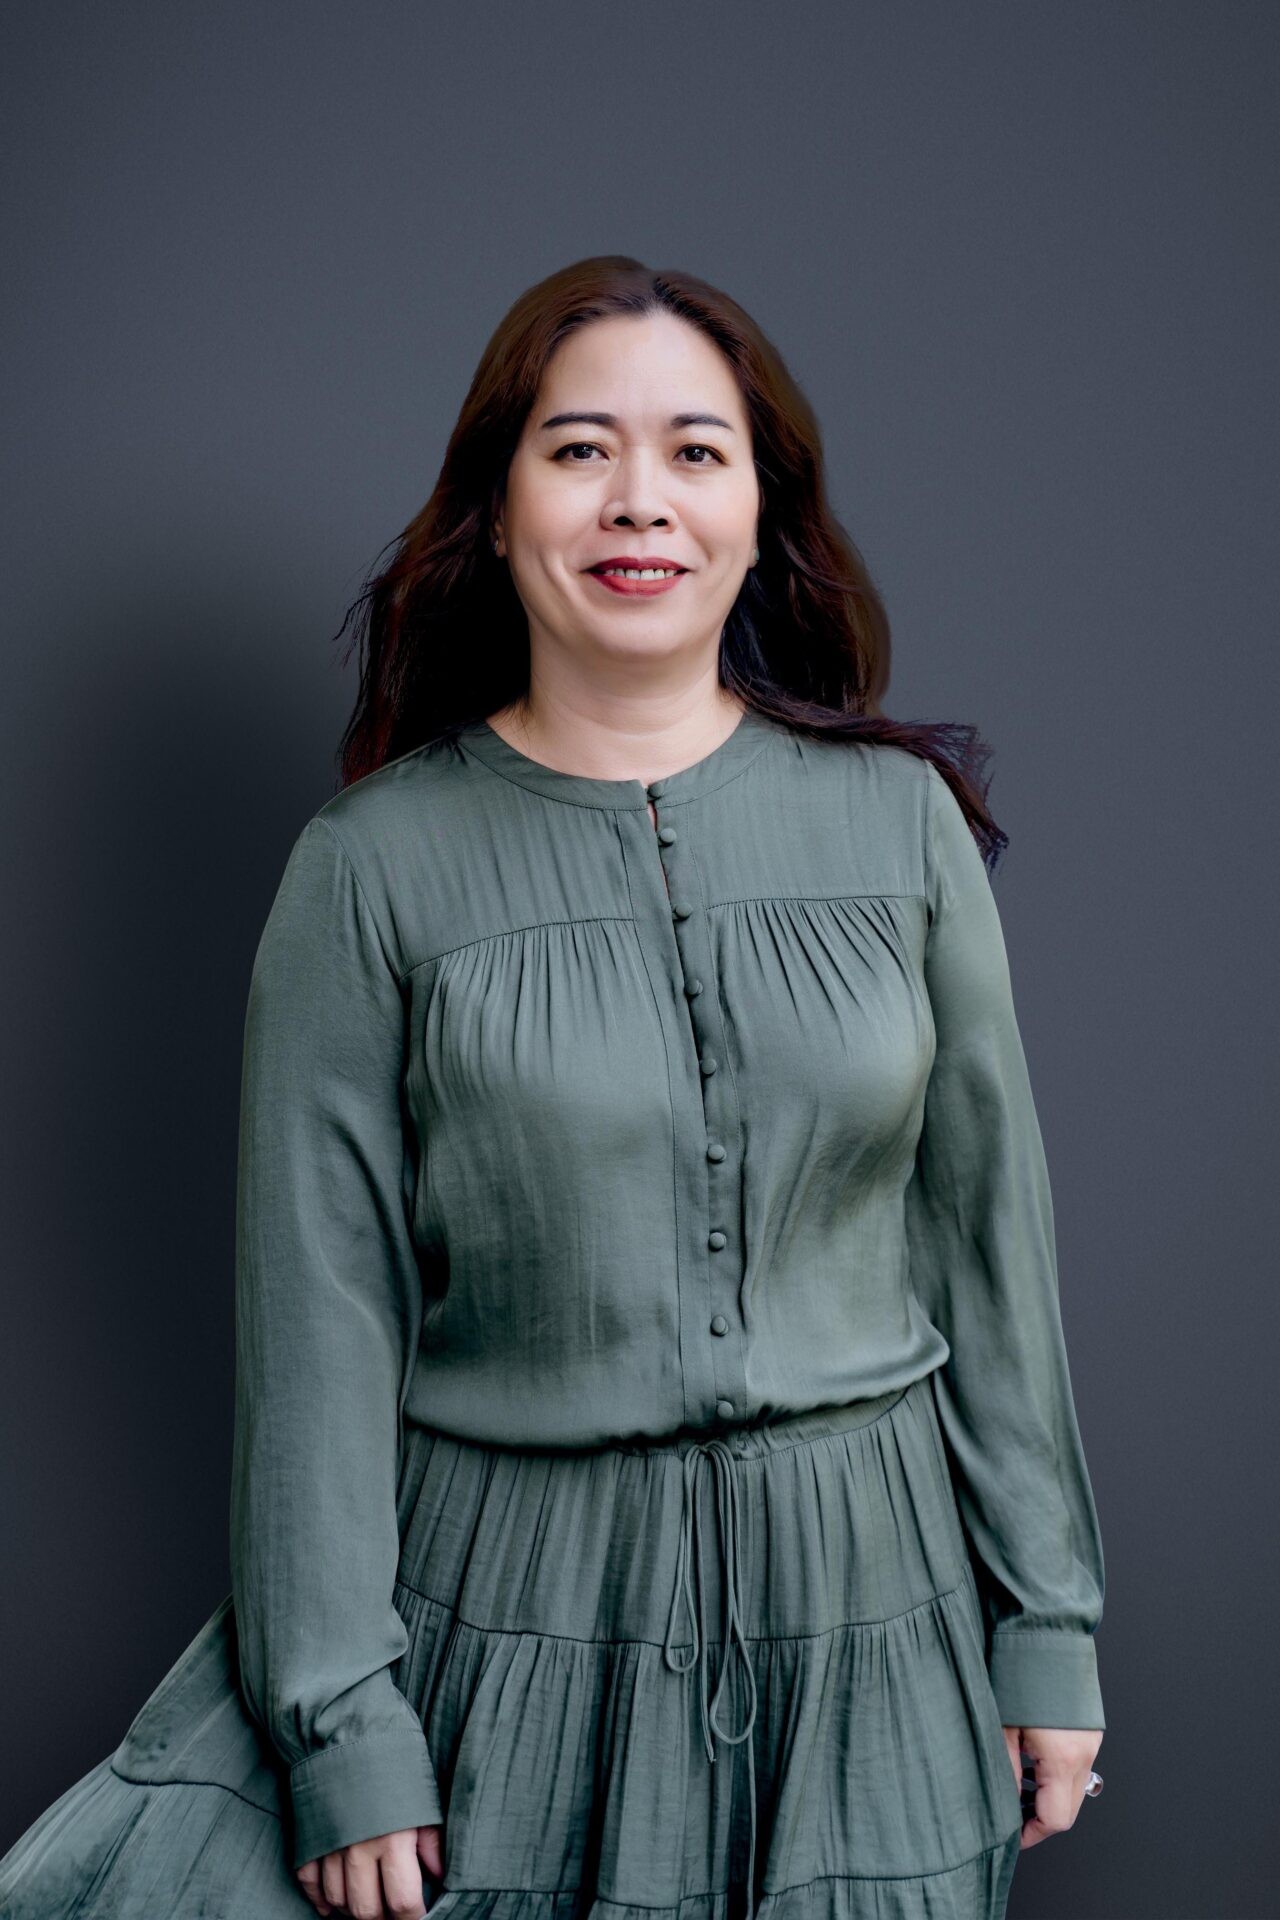 
Bà Nguyễn Thị Bích Vân
